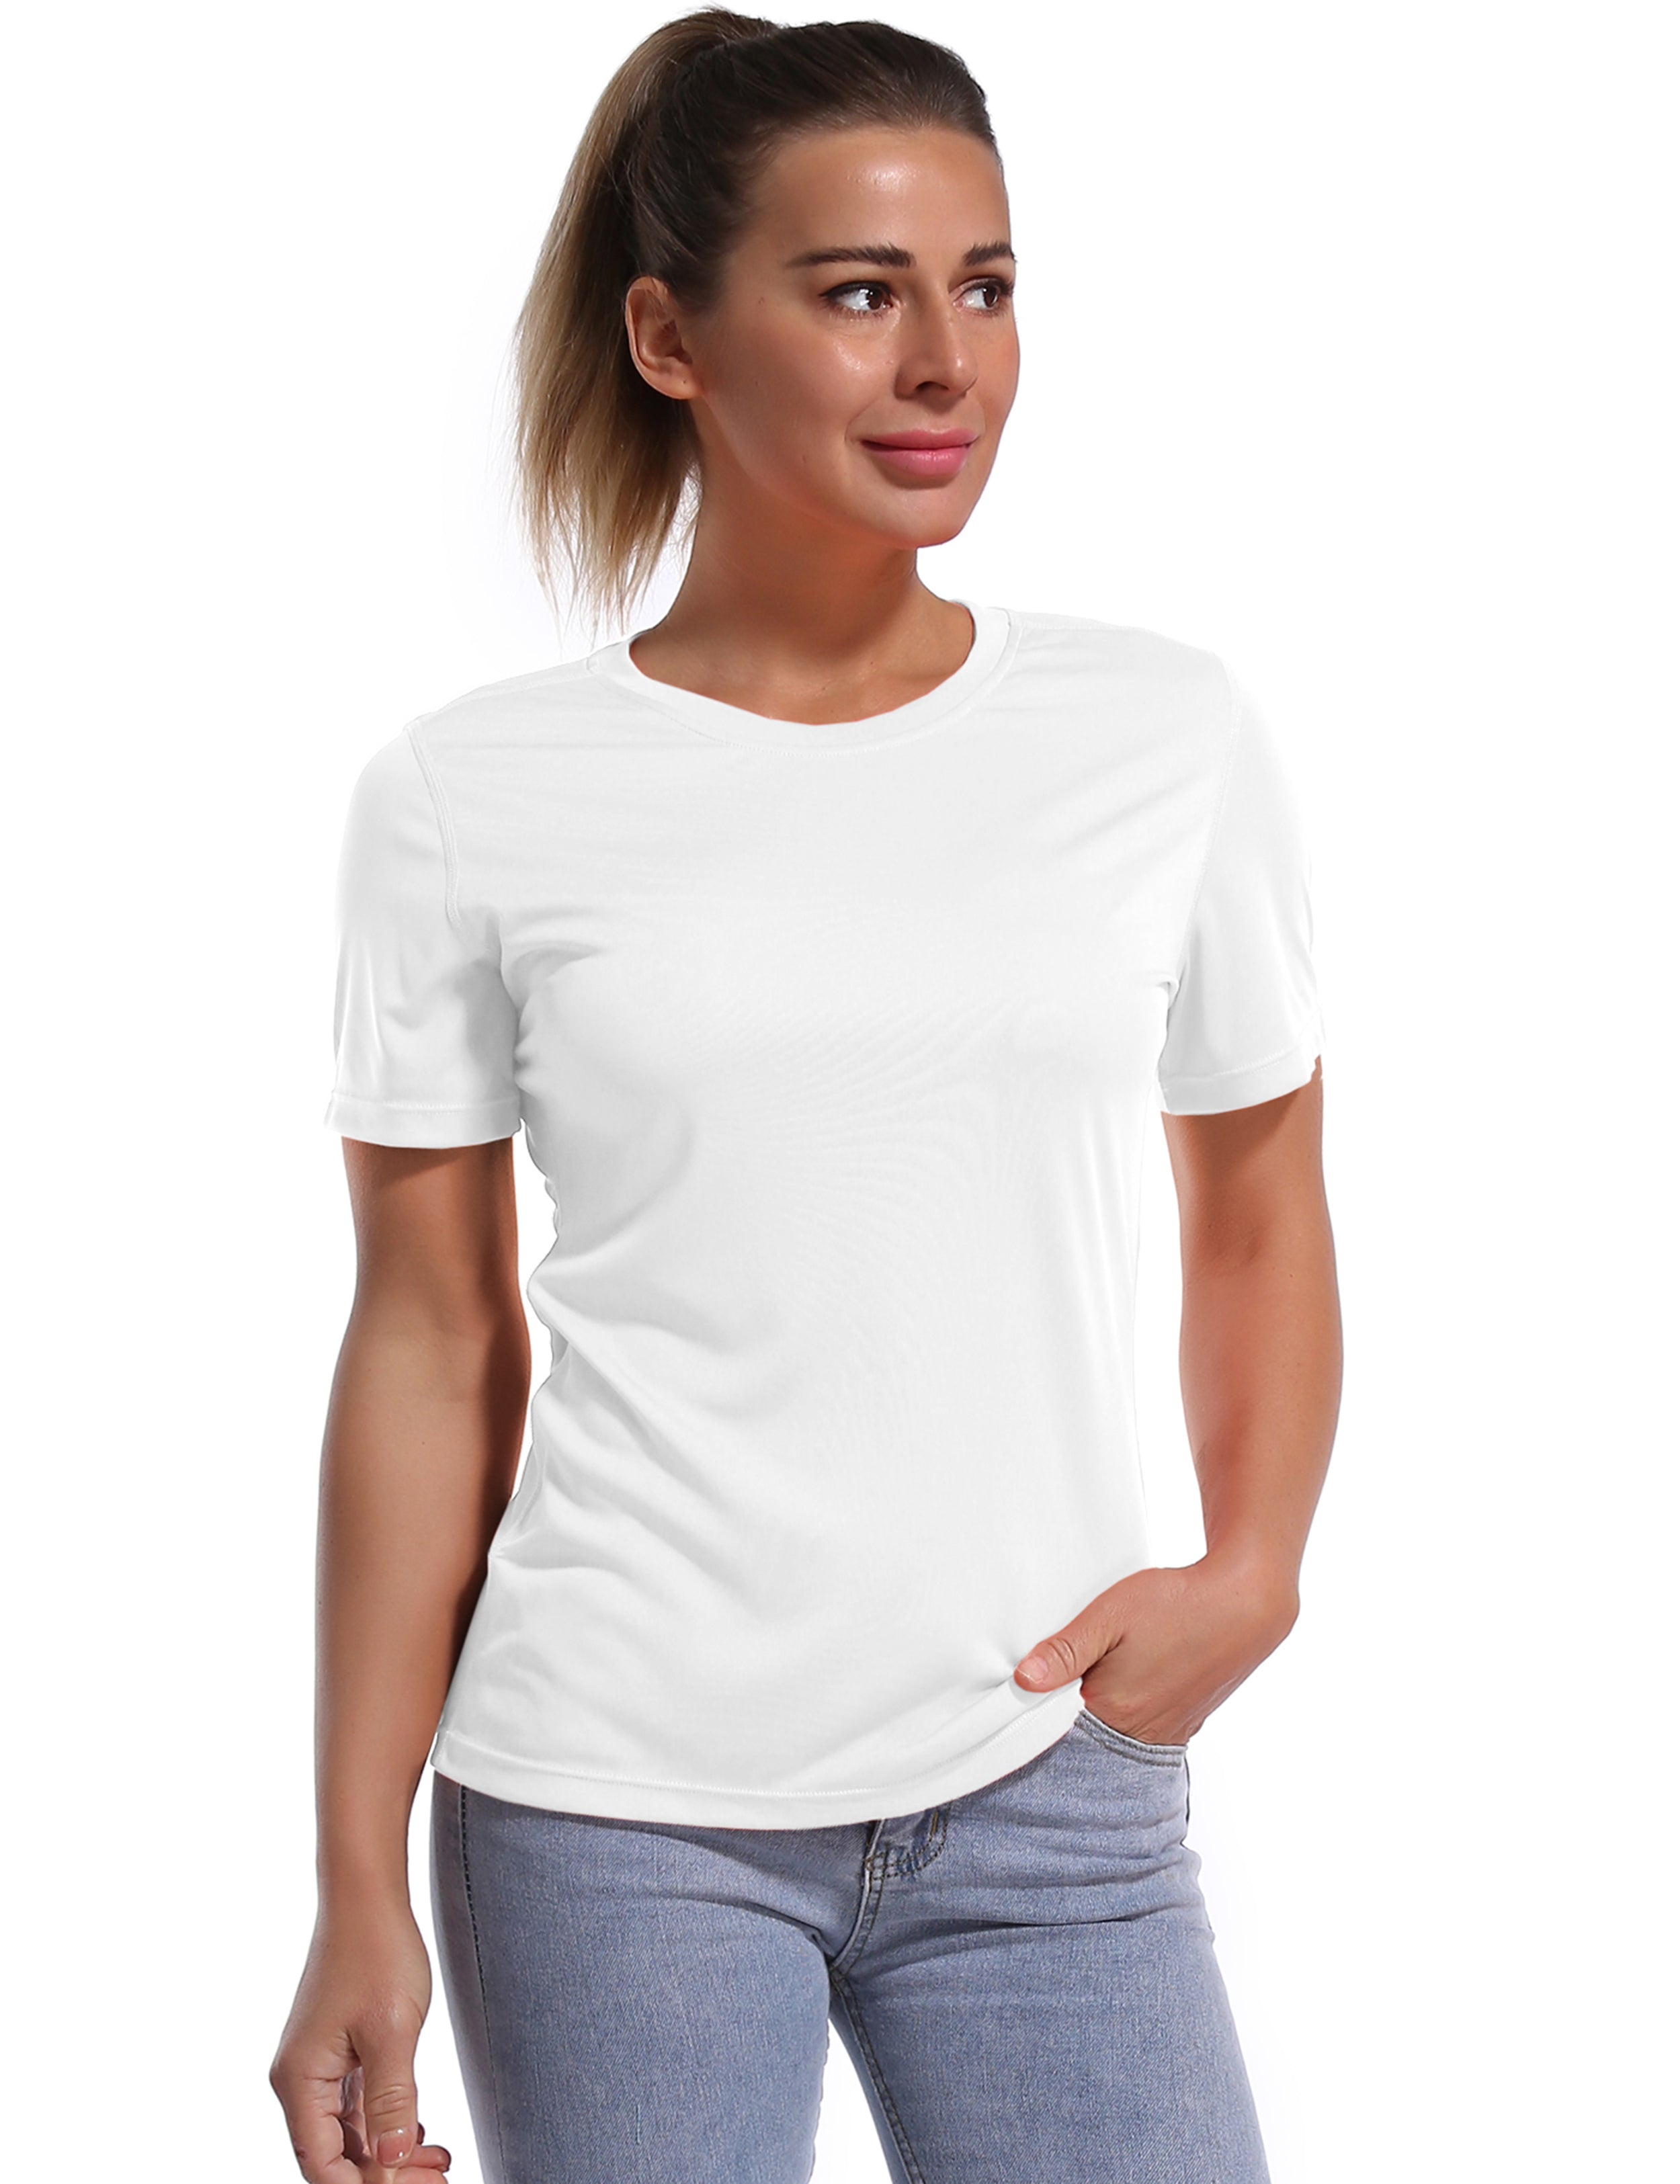 Short Sleeve Athletic Shirts white